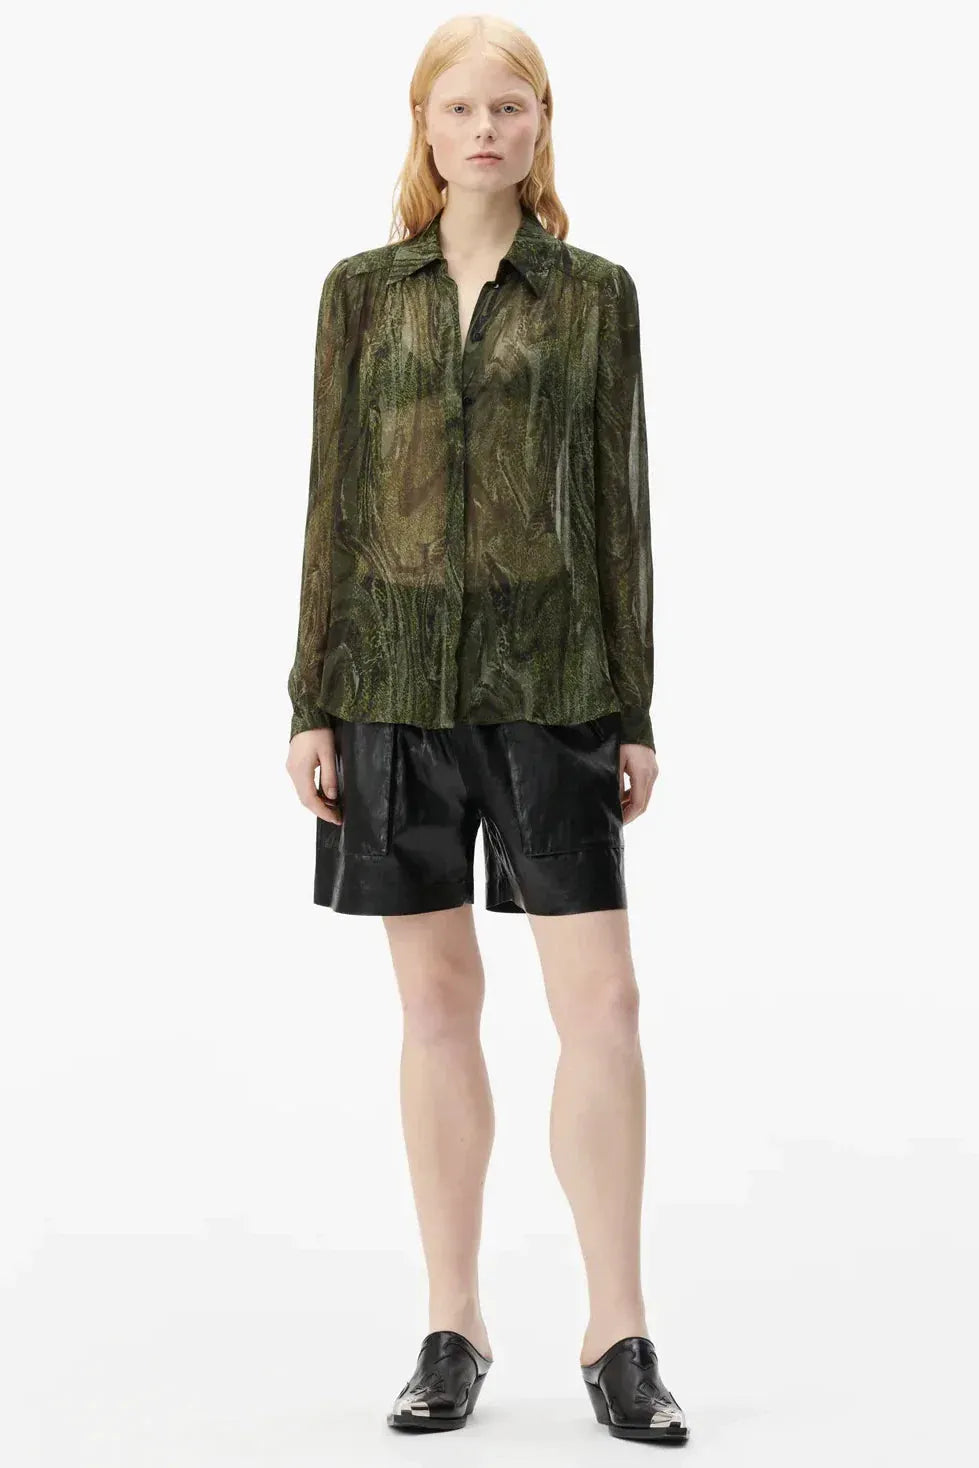 Skjorte | LALA BERLIN Bling skjorte med print i agatgrøn